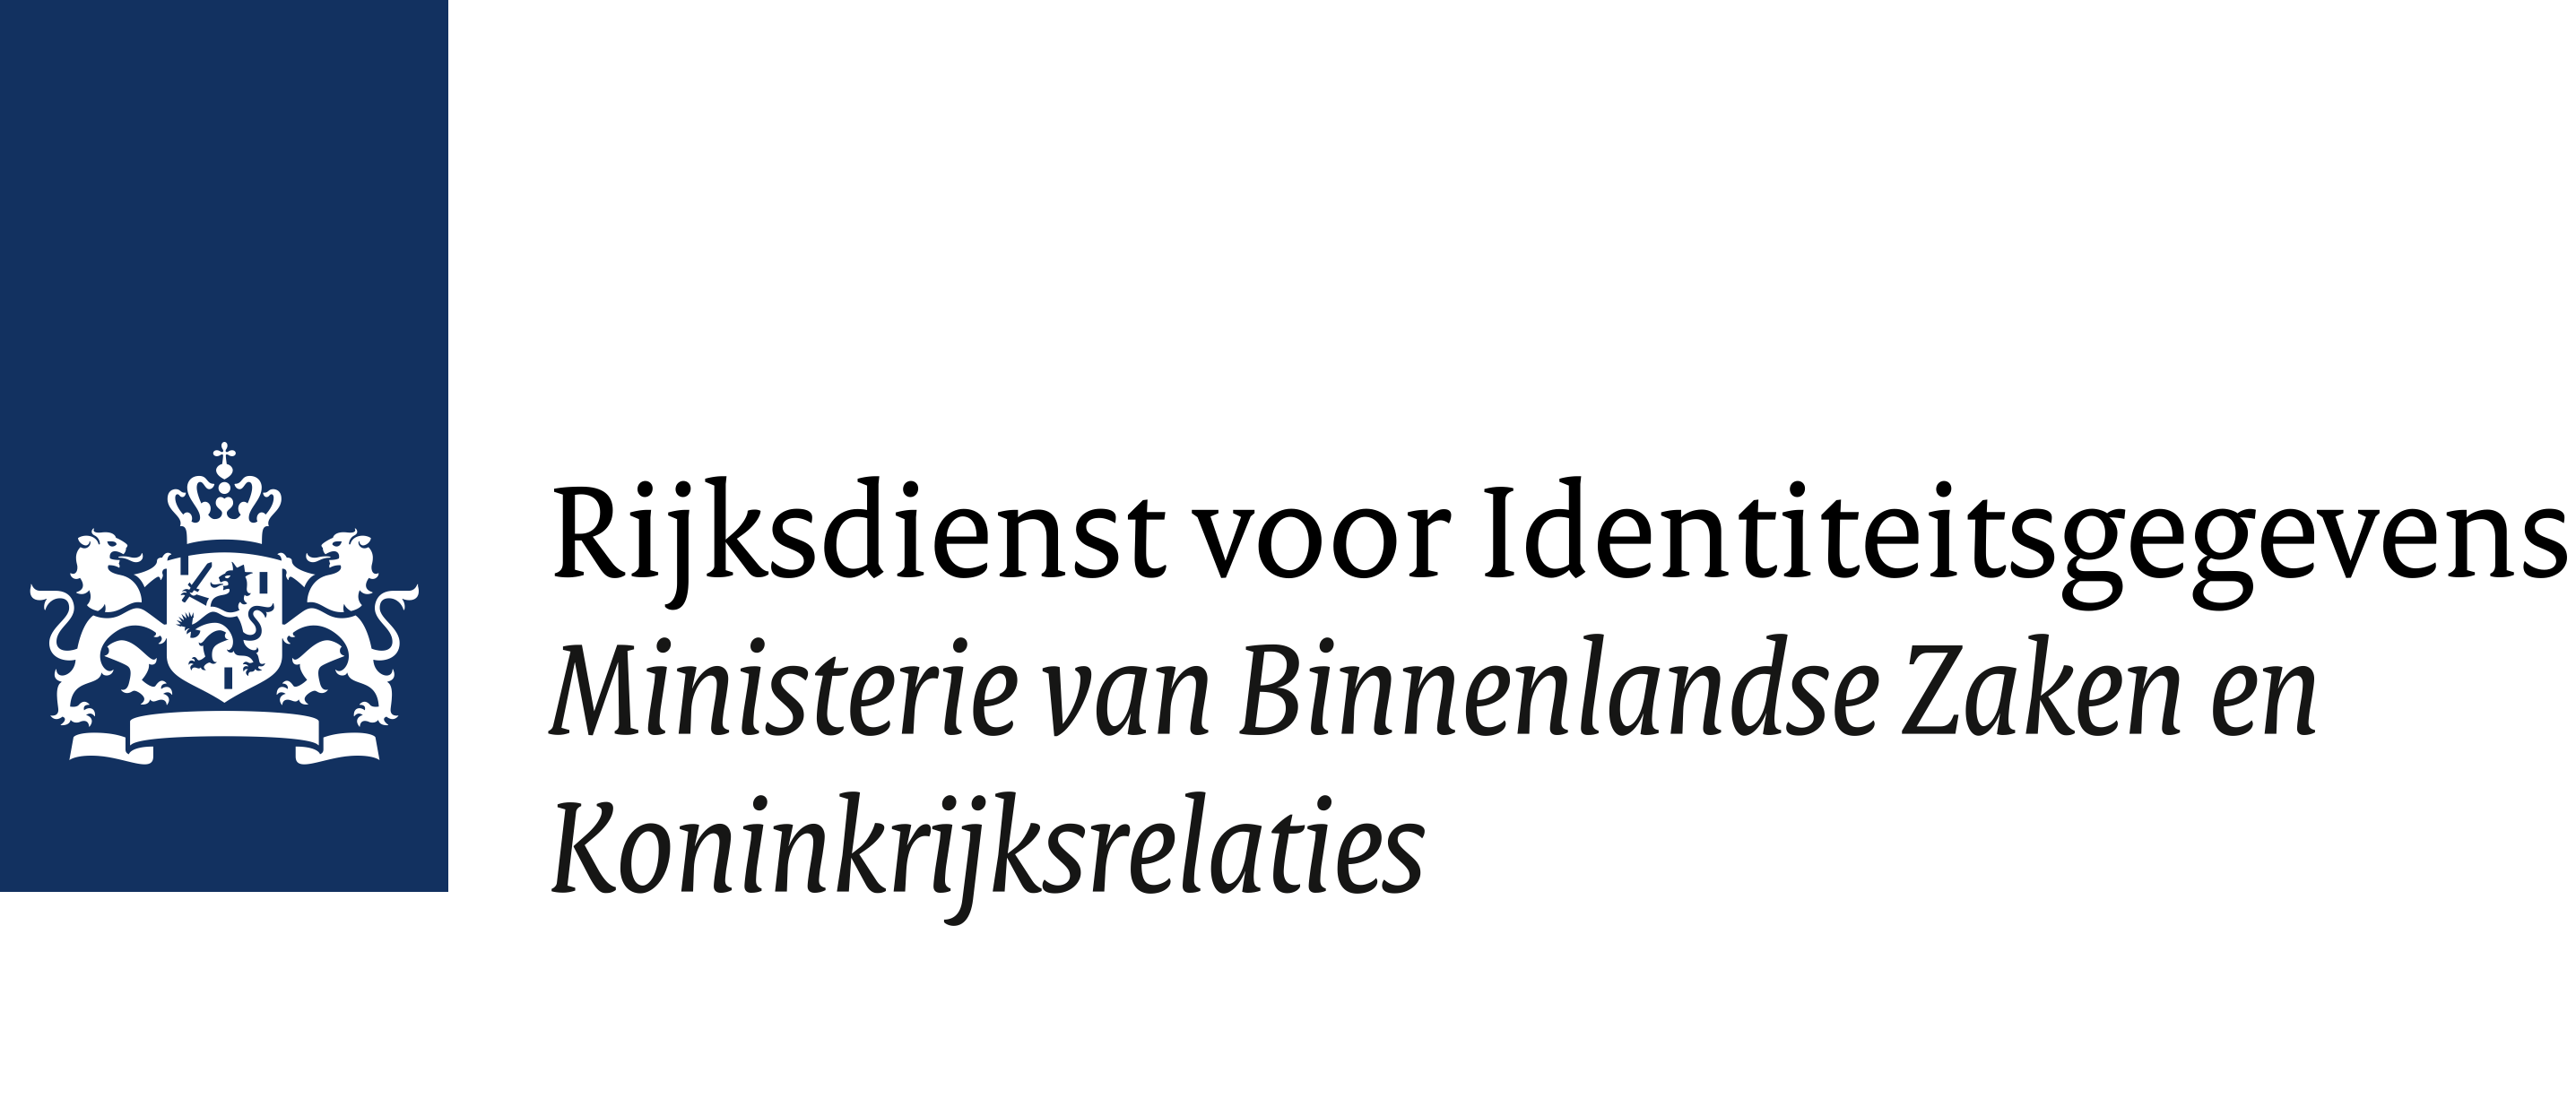 Logo van Rijksdienst voor Identiteitsgegevens onderdeel van het Ministerie van Binnenlandse Zaken en Koningkrijksrelaties